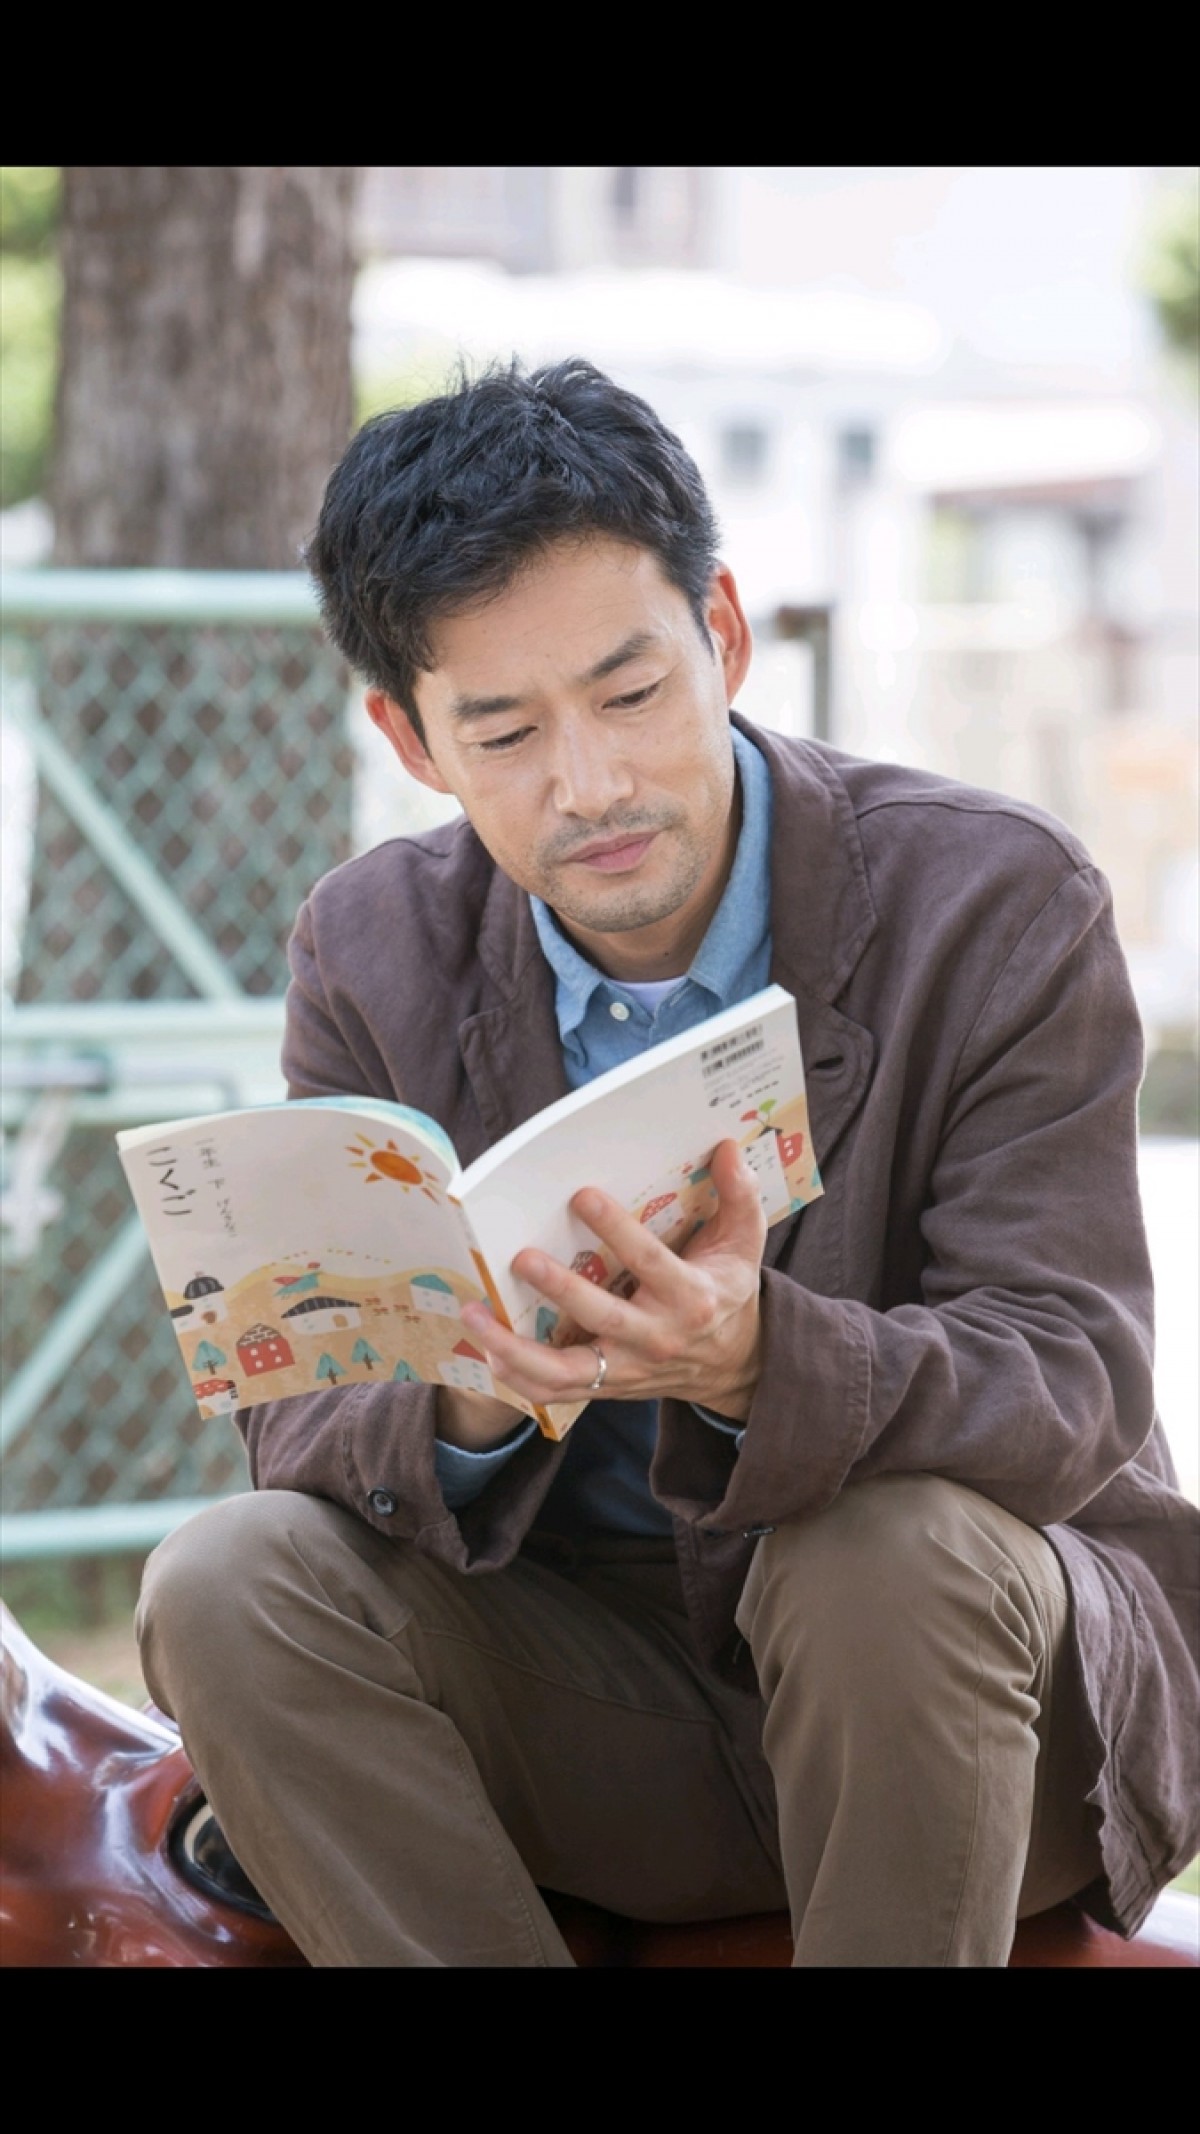 竹野内豊、NHKドラマに初主演 偏屈で冴えない46歳の数学者に